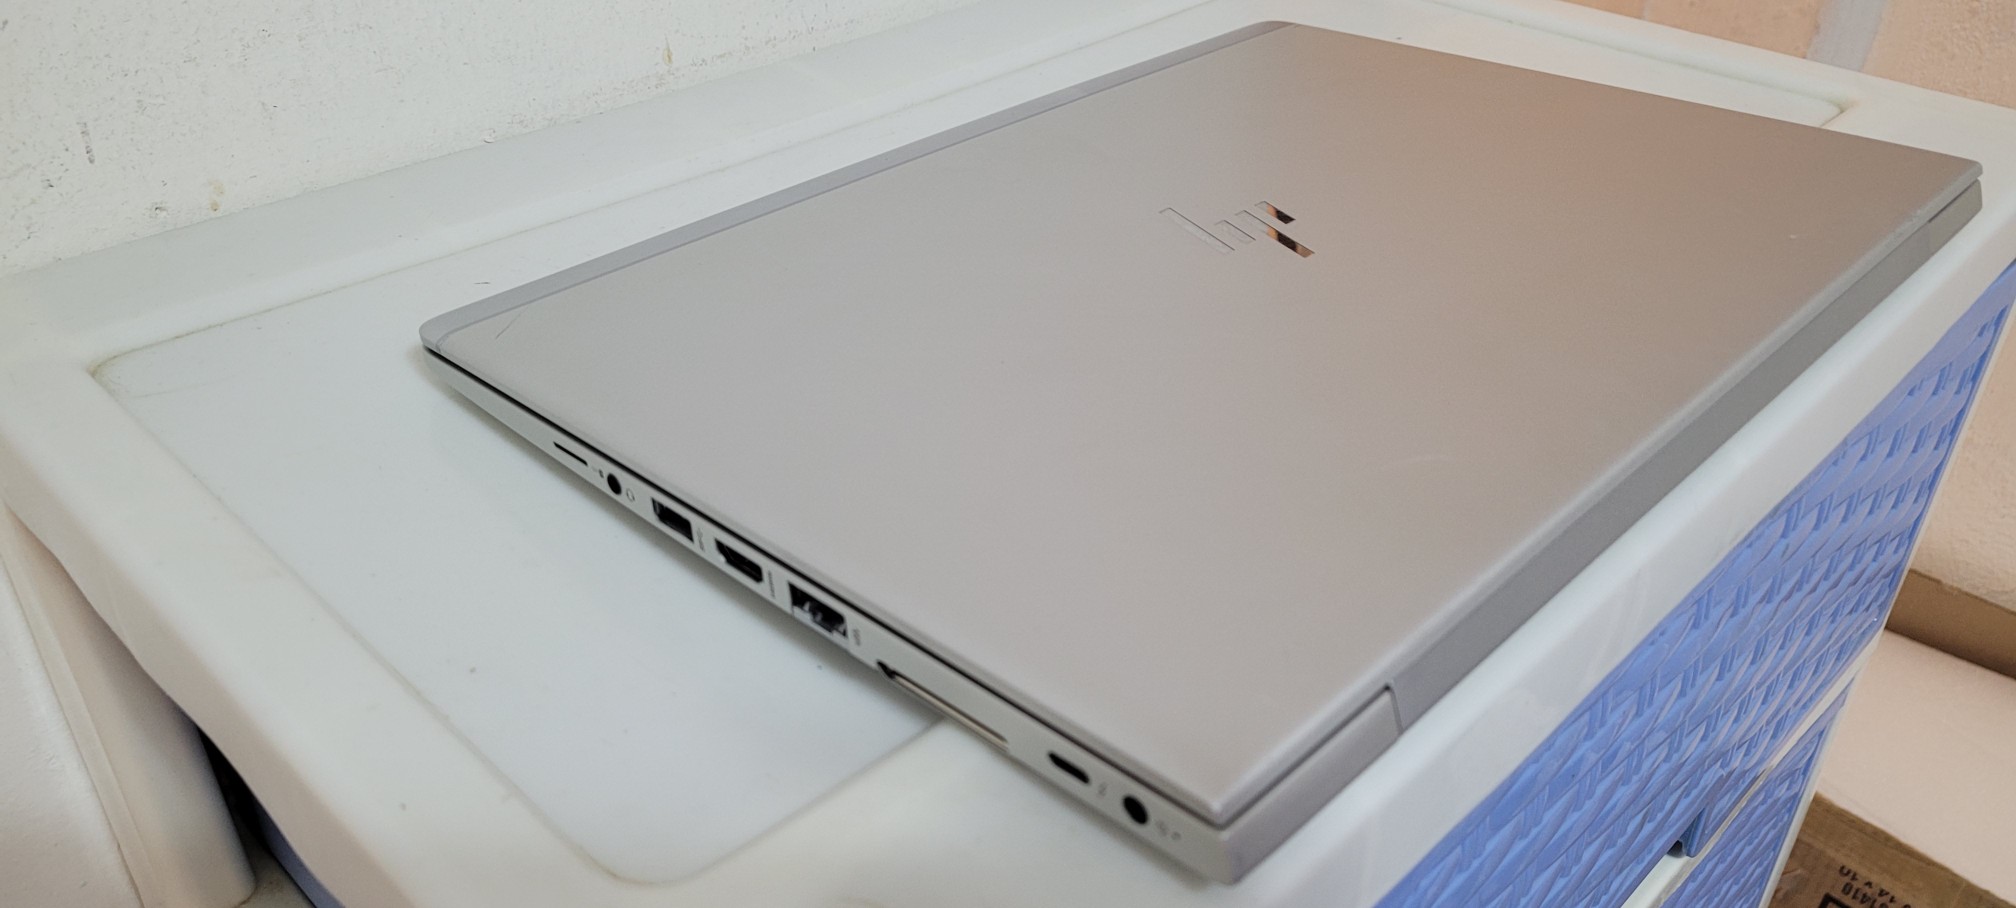 computadoras y laptops - laptop hp G5 14 Pulg Core i5 7ma Gen Ram 8gb ddr4 Disco 256gb 1080p 2